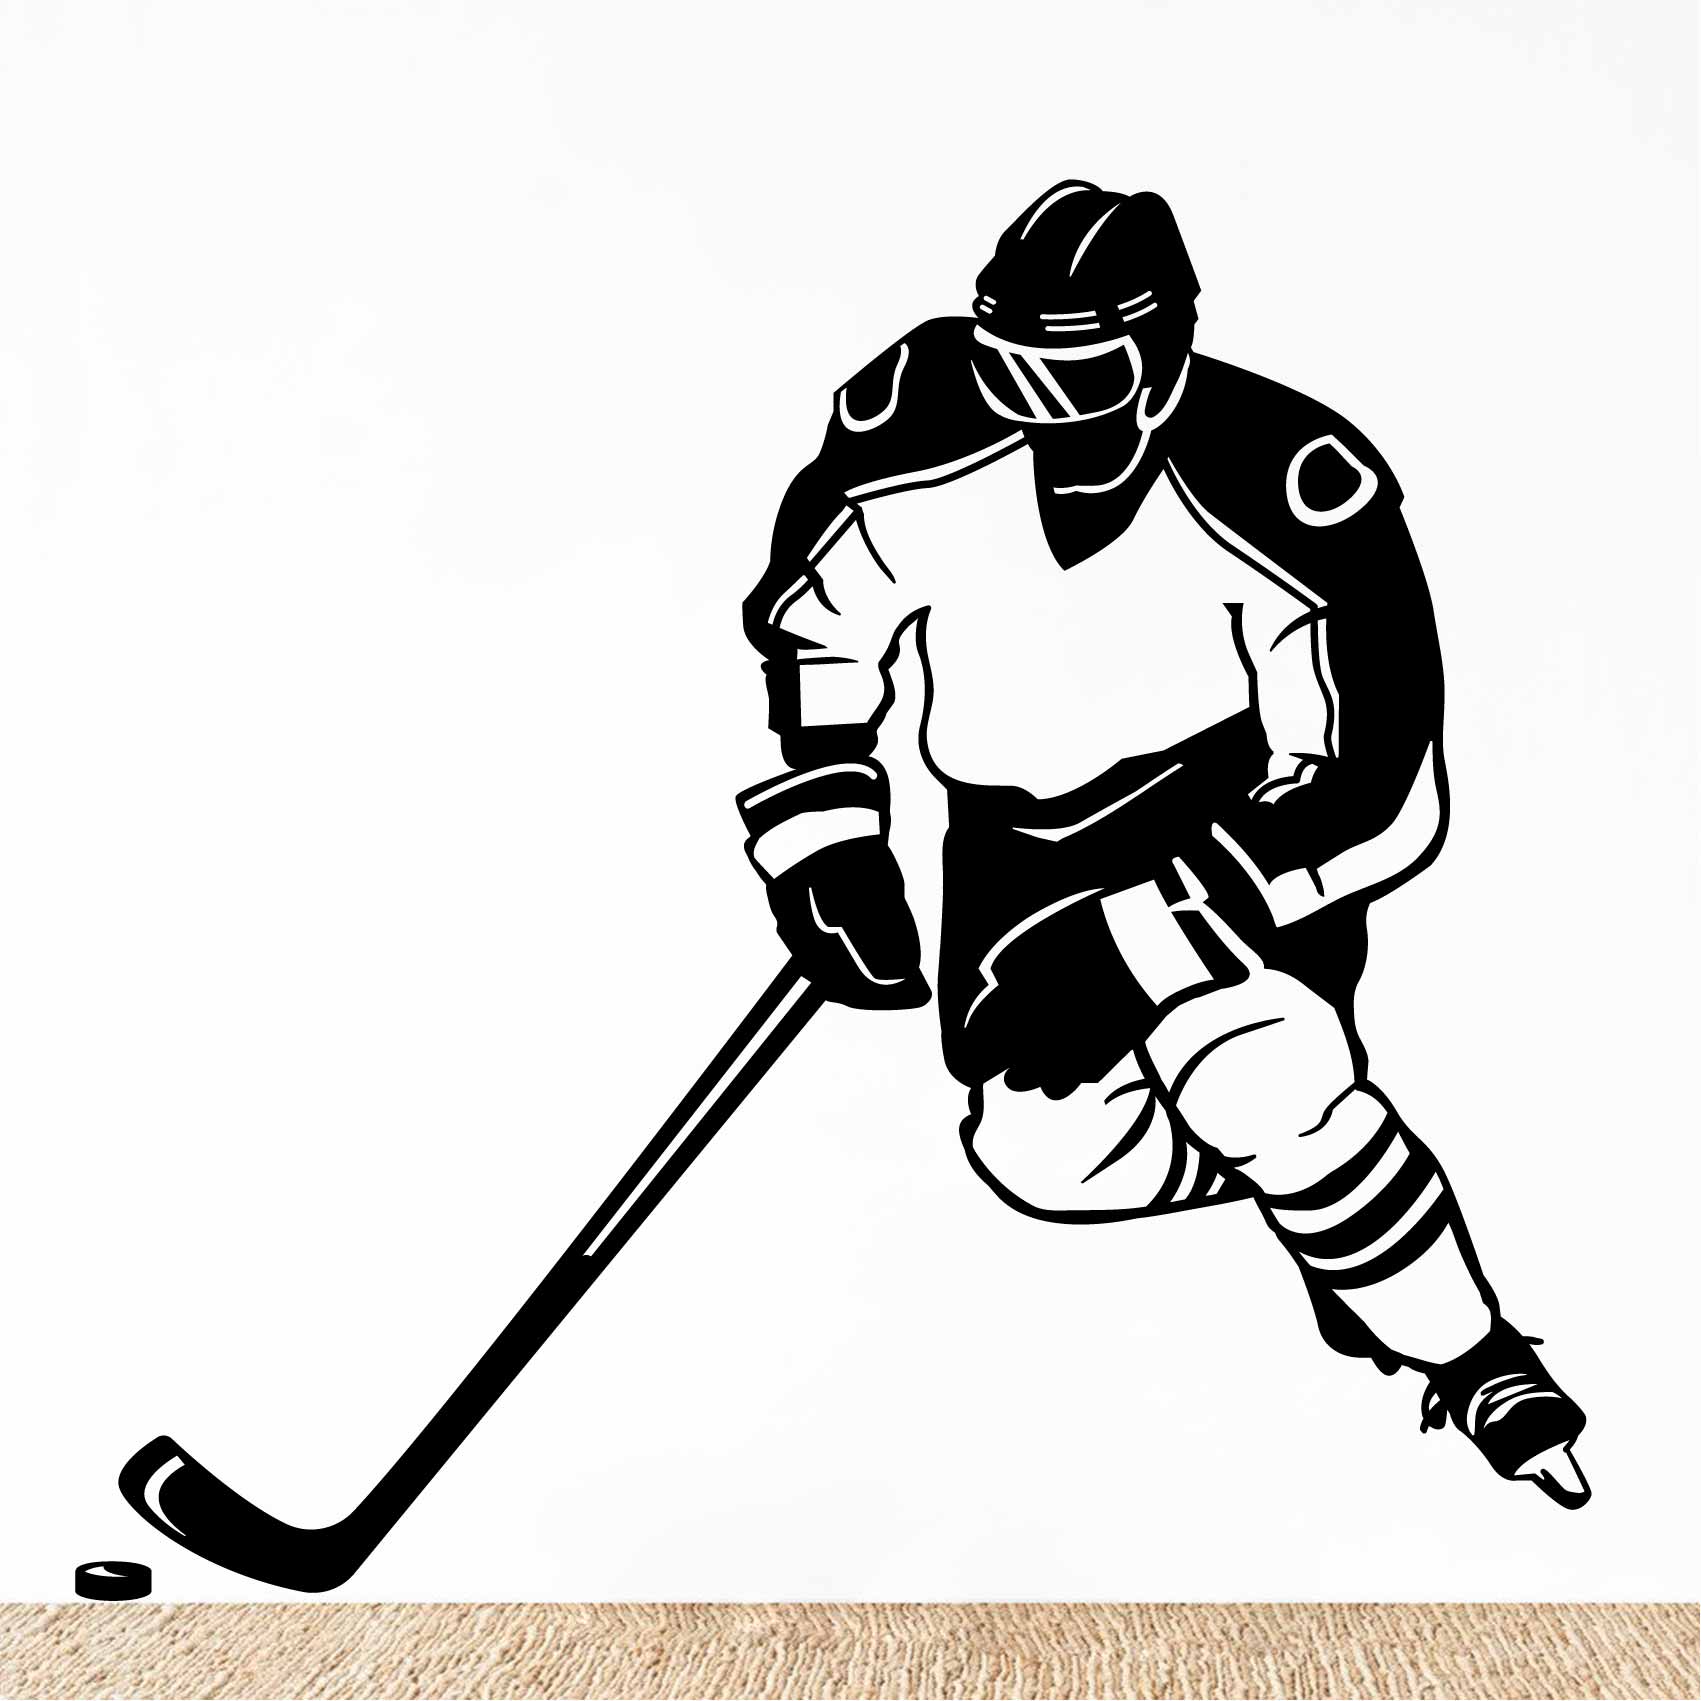 stickers-mural-hockey-ref17silhouette-stickers-muraux-silhouette-autocollant-chambre-salon-sticker-mural-ombre